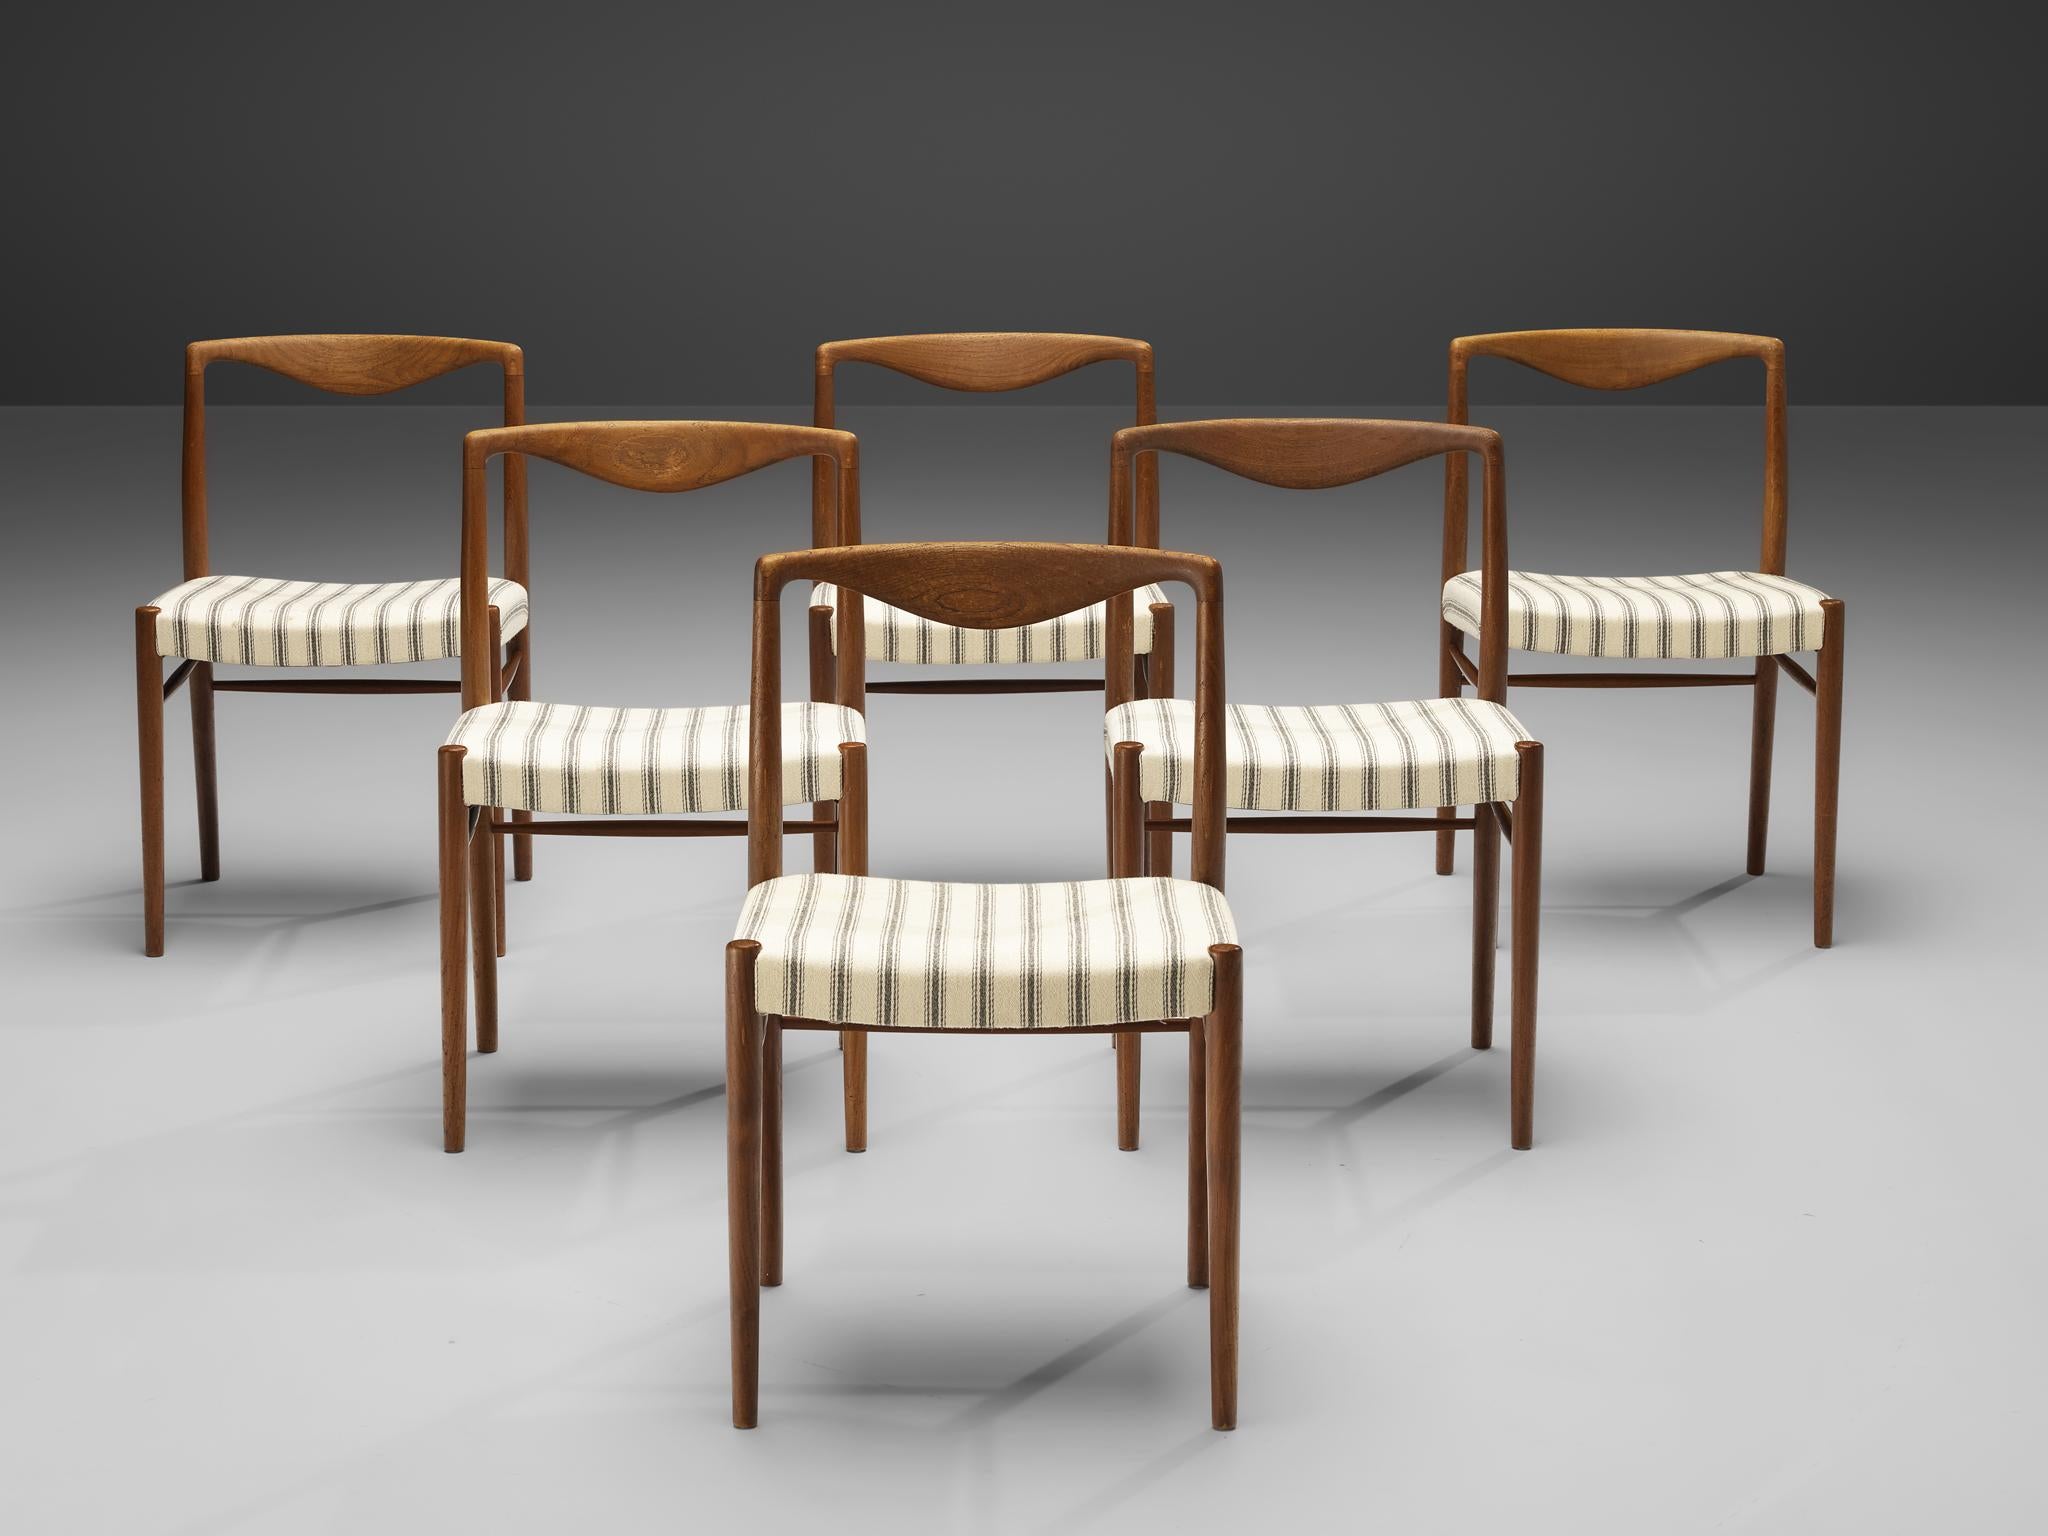 Kai Lyngfeldt Larsen pour Soren Willadsen, ensemble de six chaises de salle à manger, teck, tissu, Danemark, années 1960.

Ces chaises de salle à manger élégantes et incurvées témoignent d'un travail artisanal remarquable. La traverse supérieure est